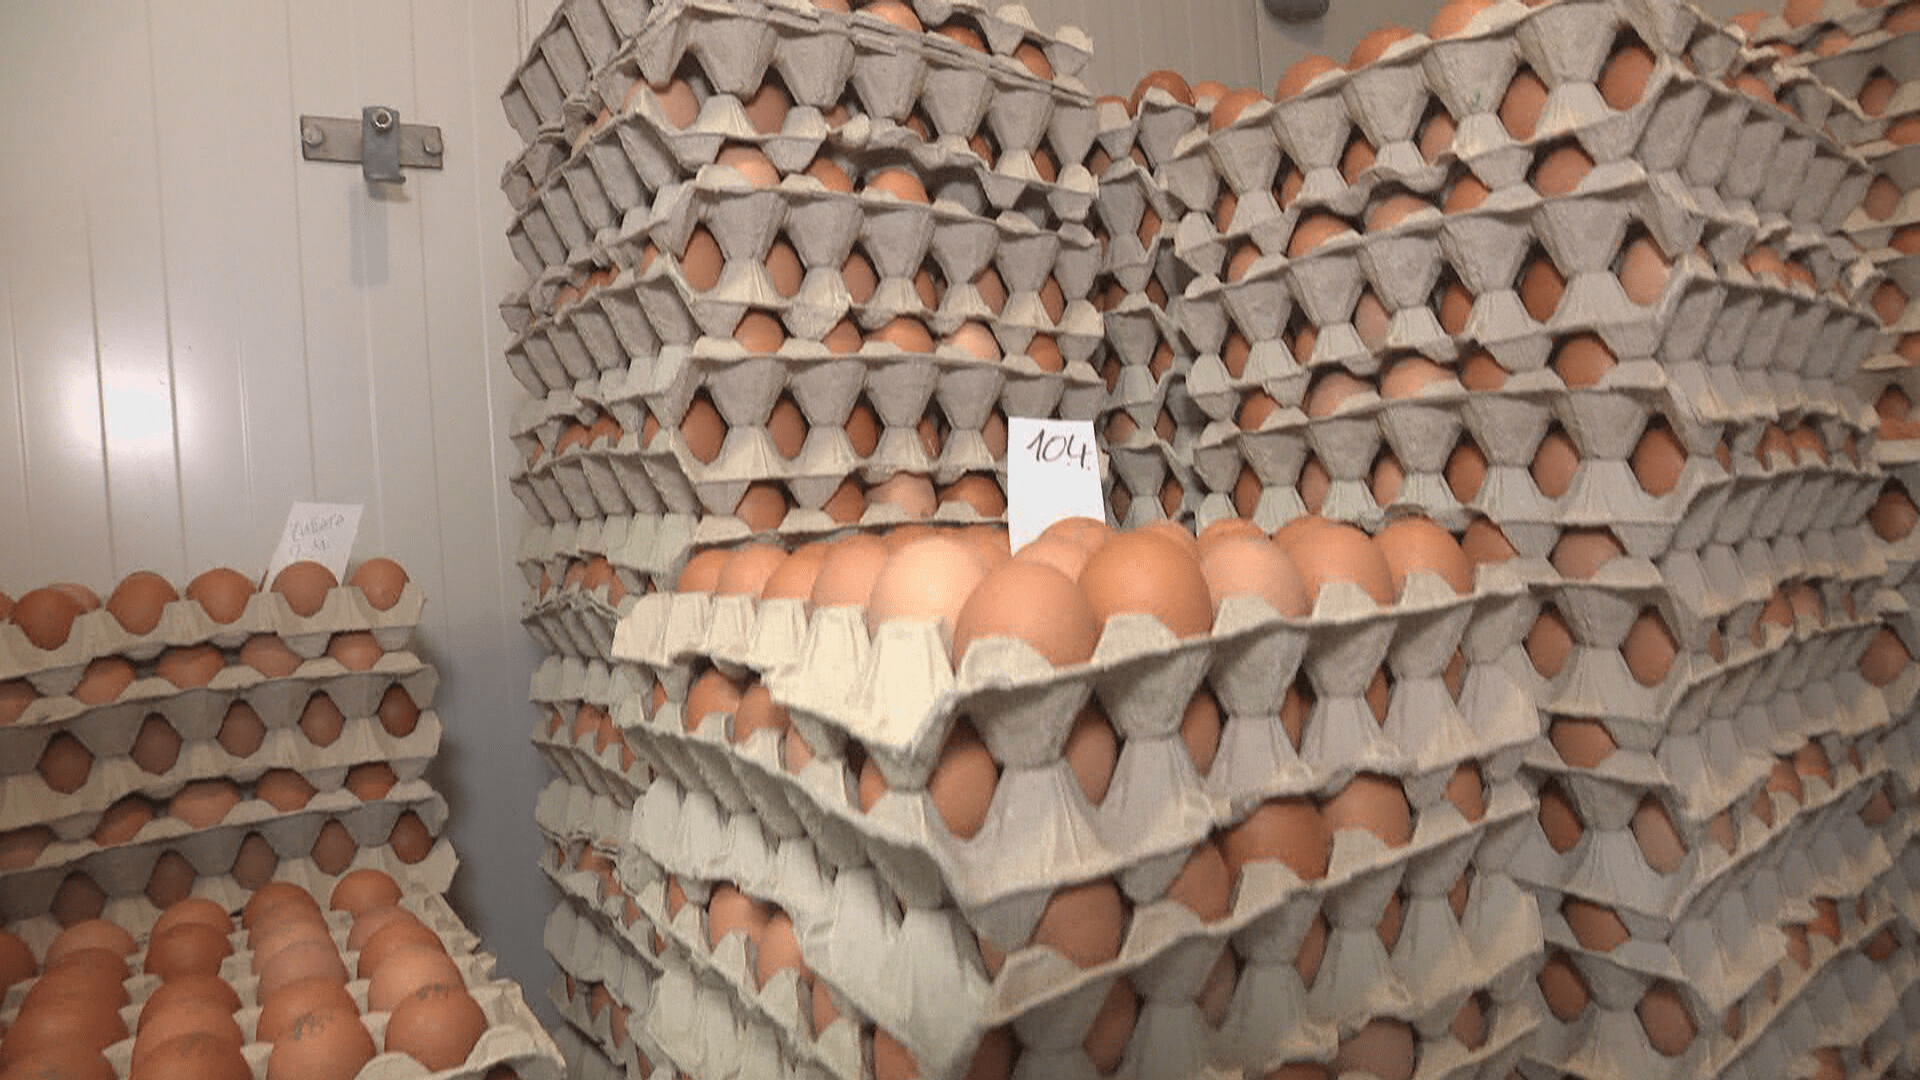 Vajíčka letos nakoupíme o několik korun dráž než loni.